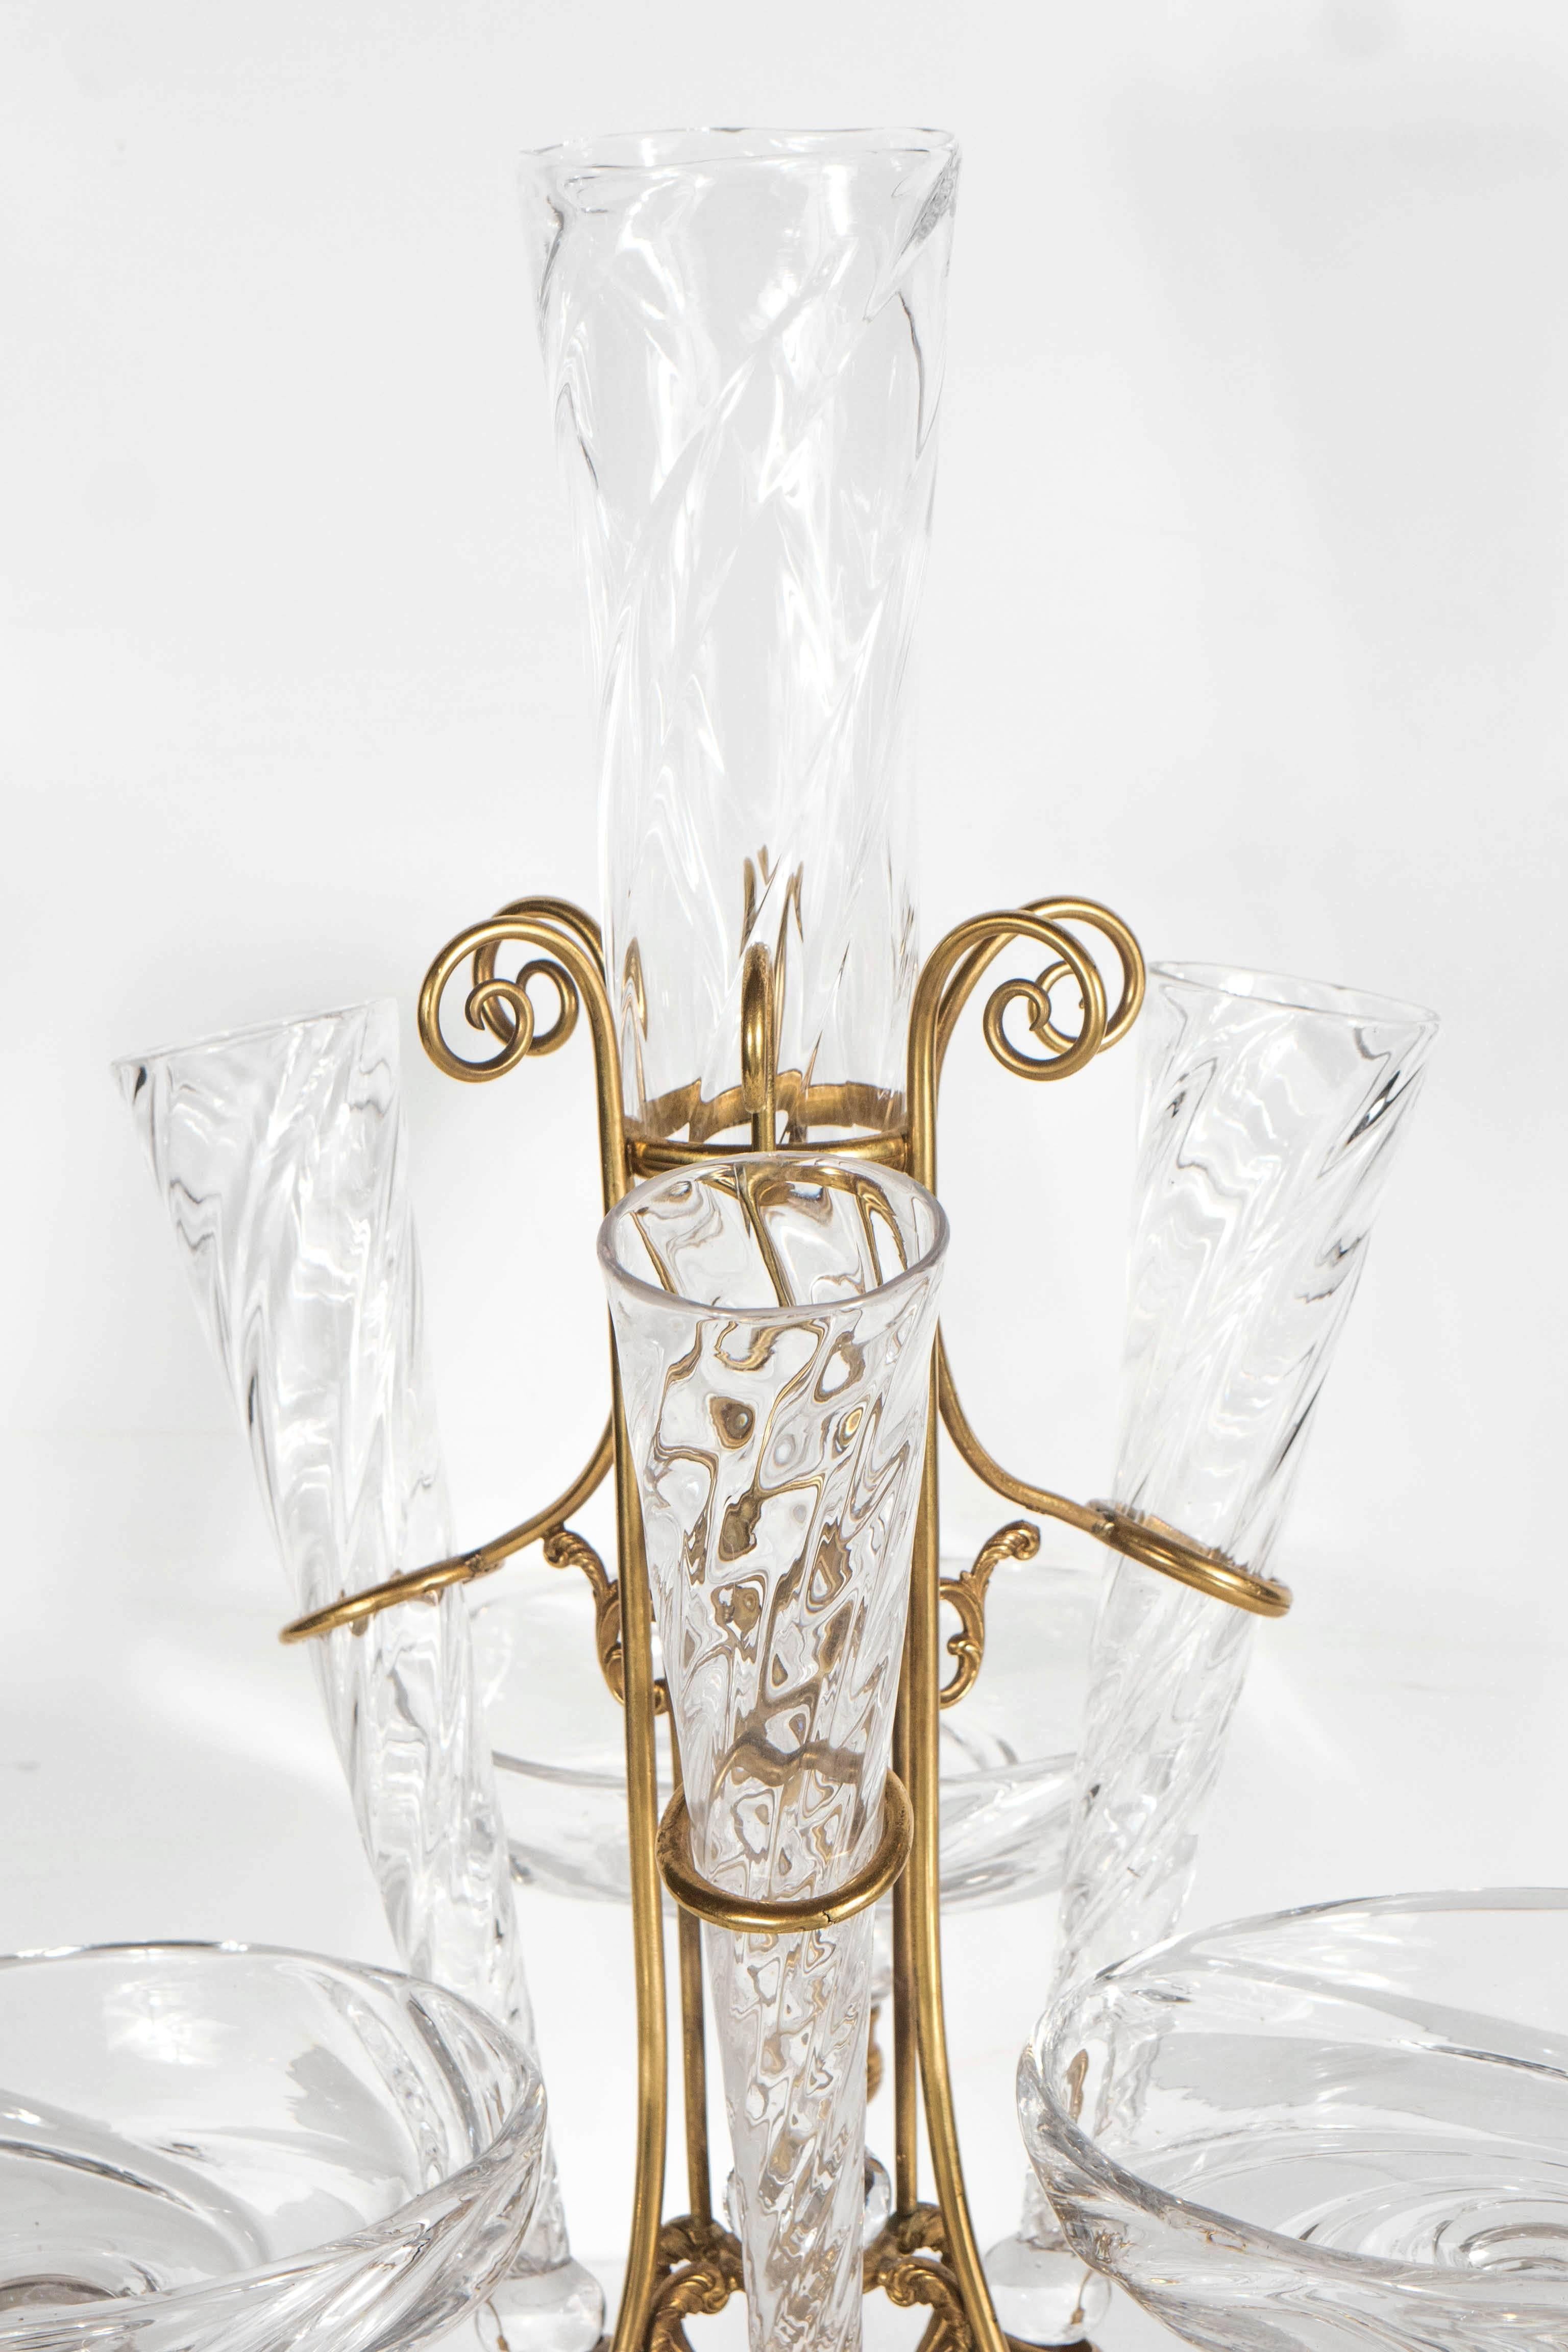 Diese atemberaubende französische Art-Déco-Epergne (typischerweise auf einem Esstisch oder Buffet aufgestellt) wurde um 1930 in Frankreich hergestellt. Sie besteht aus einem Messingrahmen mit neoklassizistischen Details und Schneckenformen, der eine